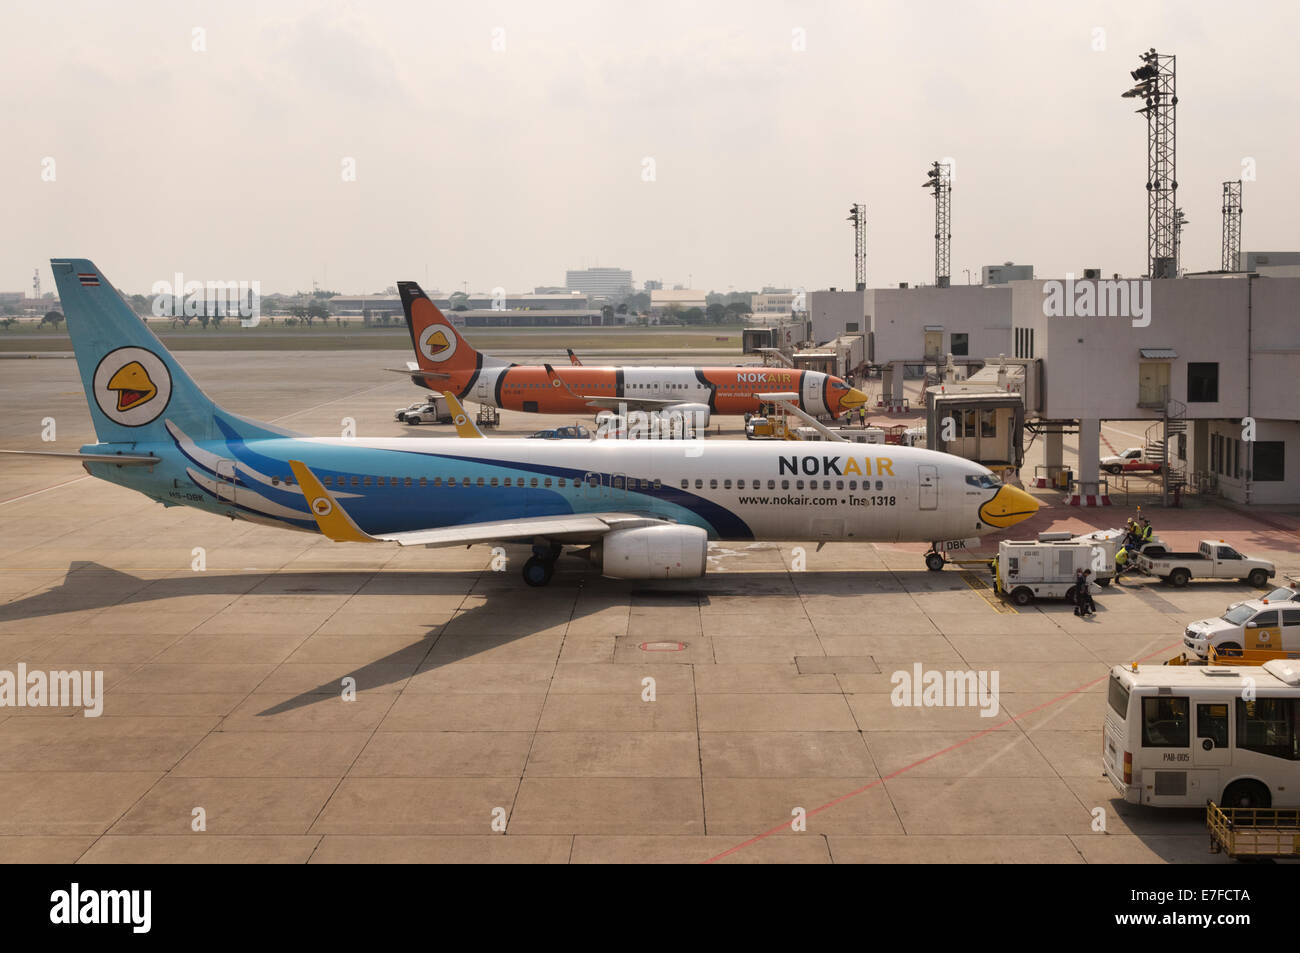 NokAir planes at Don Mueang International Airport Bangkok, Thailand Stock Photo